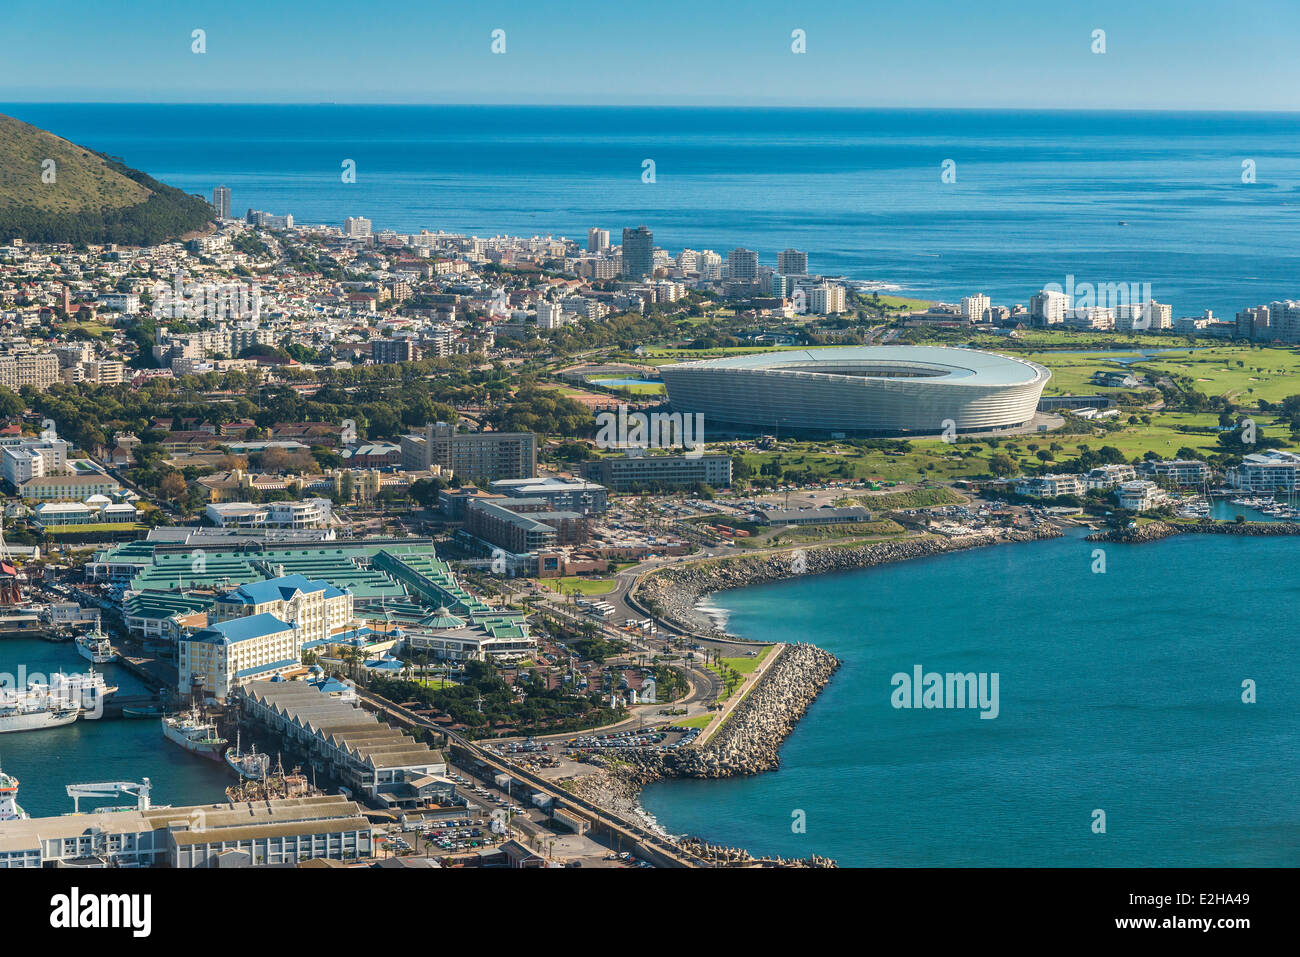 Vue aérienne avec le port et le Green Point Stadium, Cape Town, Western Cape, Afrique du Sud Banque D'Images